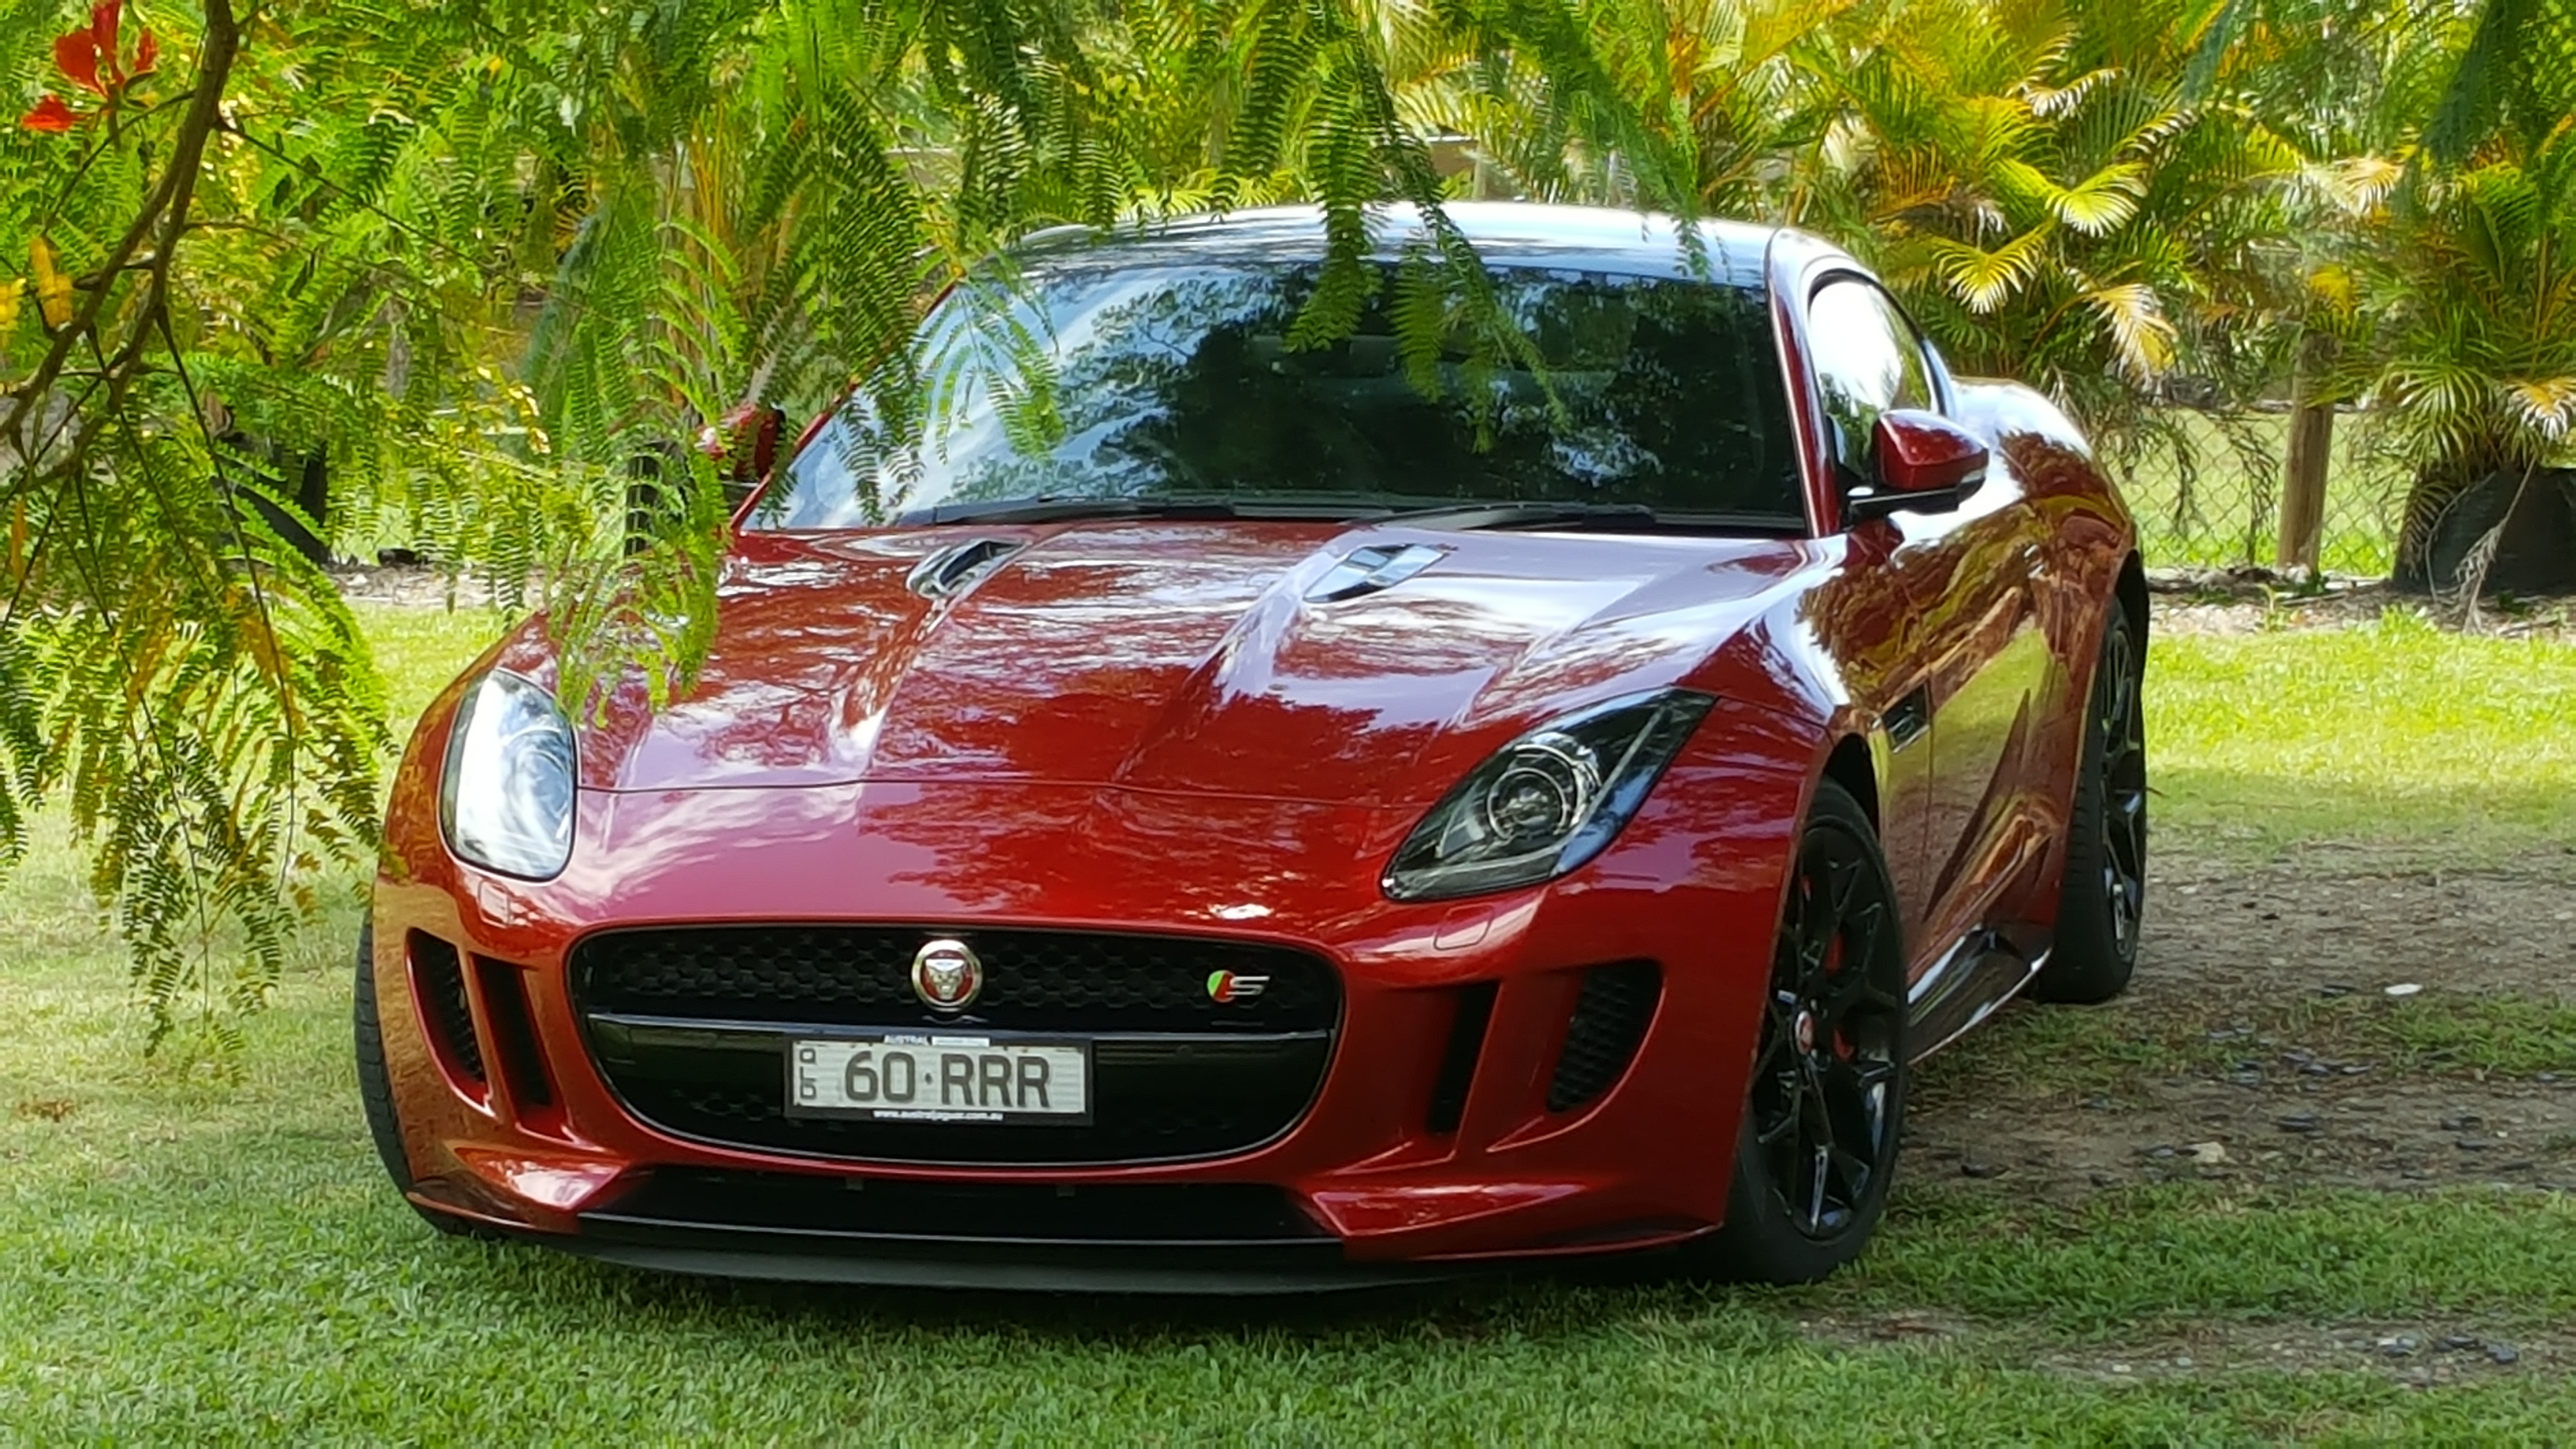 Red Or Blue Which Looks The Best Jaguar Forums Jaguar